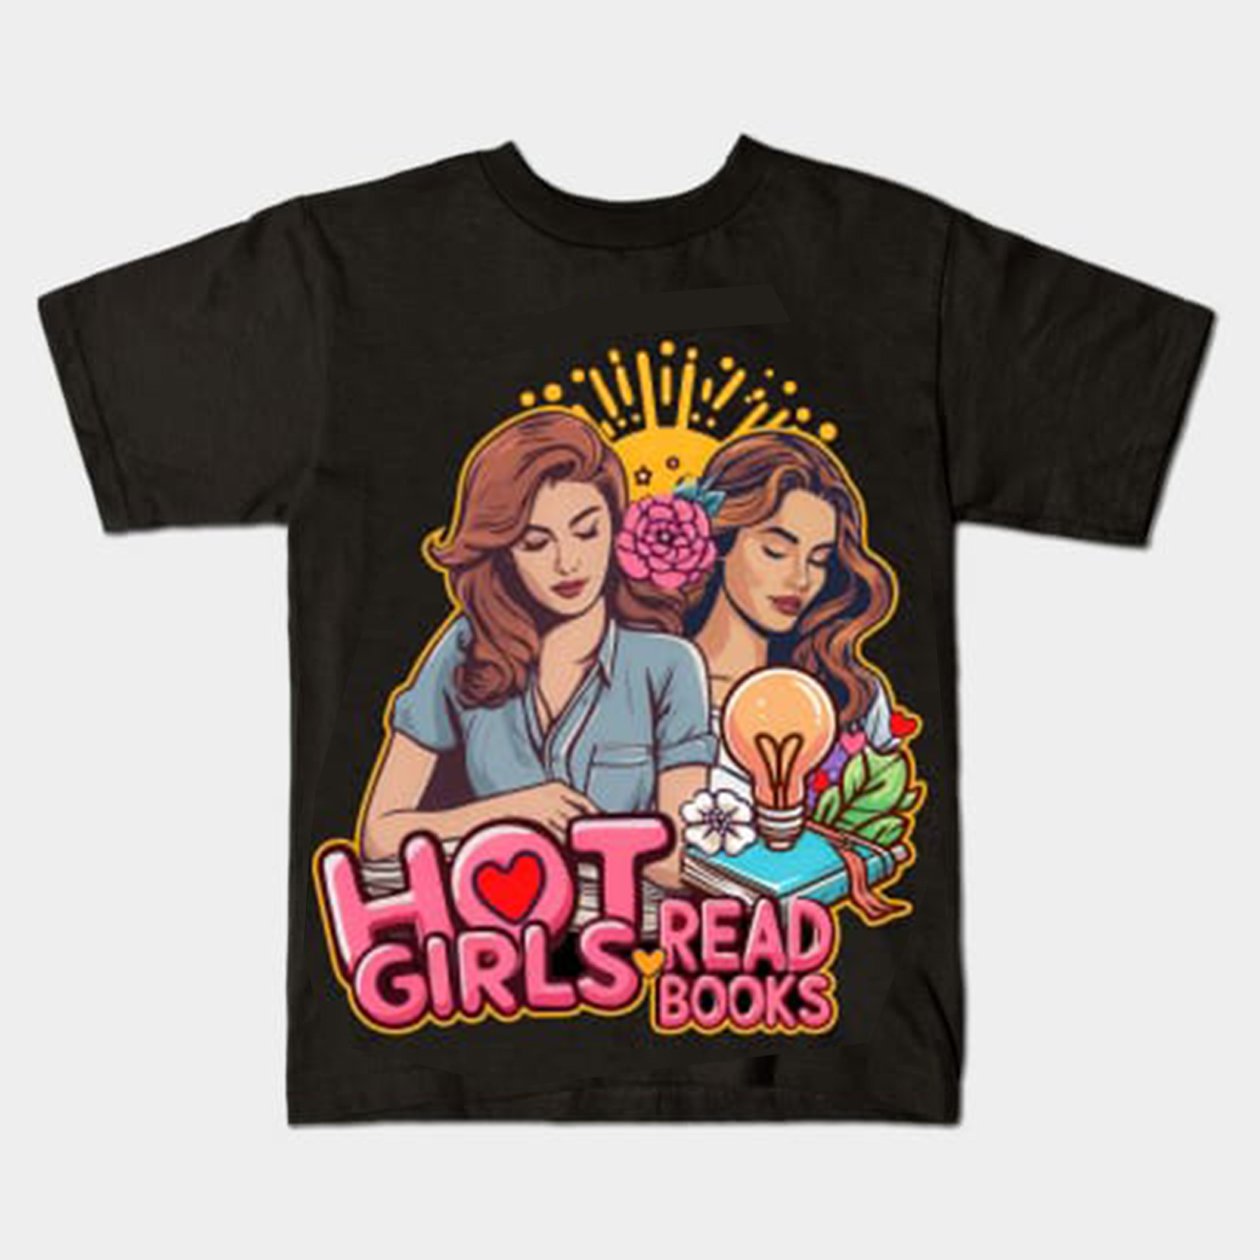 Hot Girls Read Books T-shirt